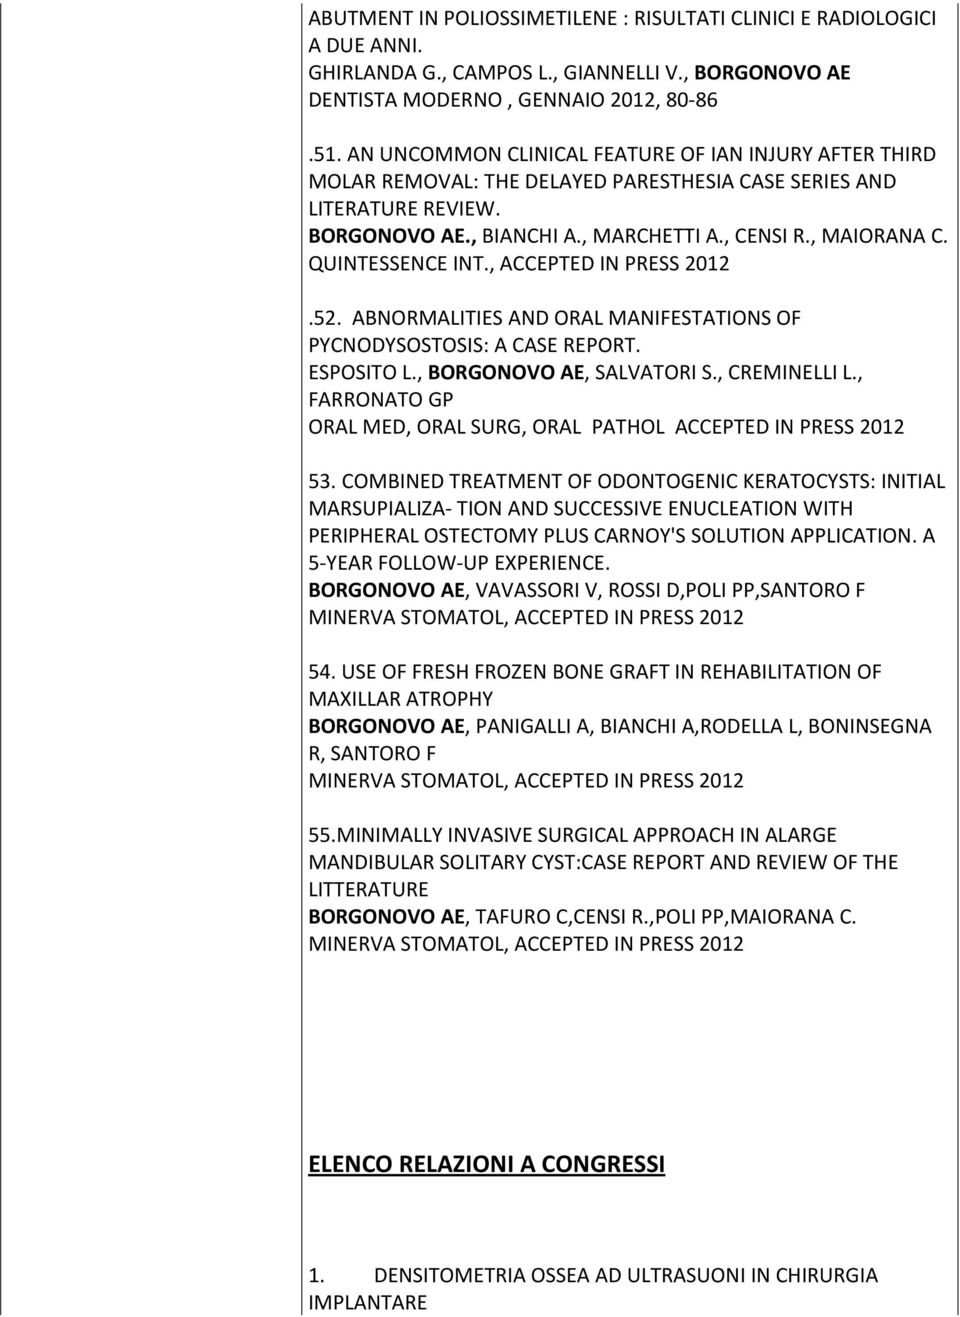 QUINTESSENCE INT., ACCEPTED IN PRESS 2012.52. ABNORMALITIES AND ORAL MANIFESTATIONS OF PYCNODYSOSTOSIS: A CASE REPORT. ESPOSITO L., BORGONOVO AE, SALVATORI S., CREMINELLI L.